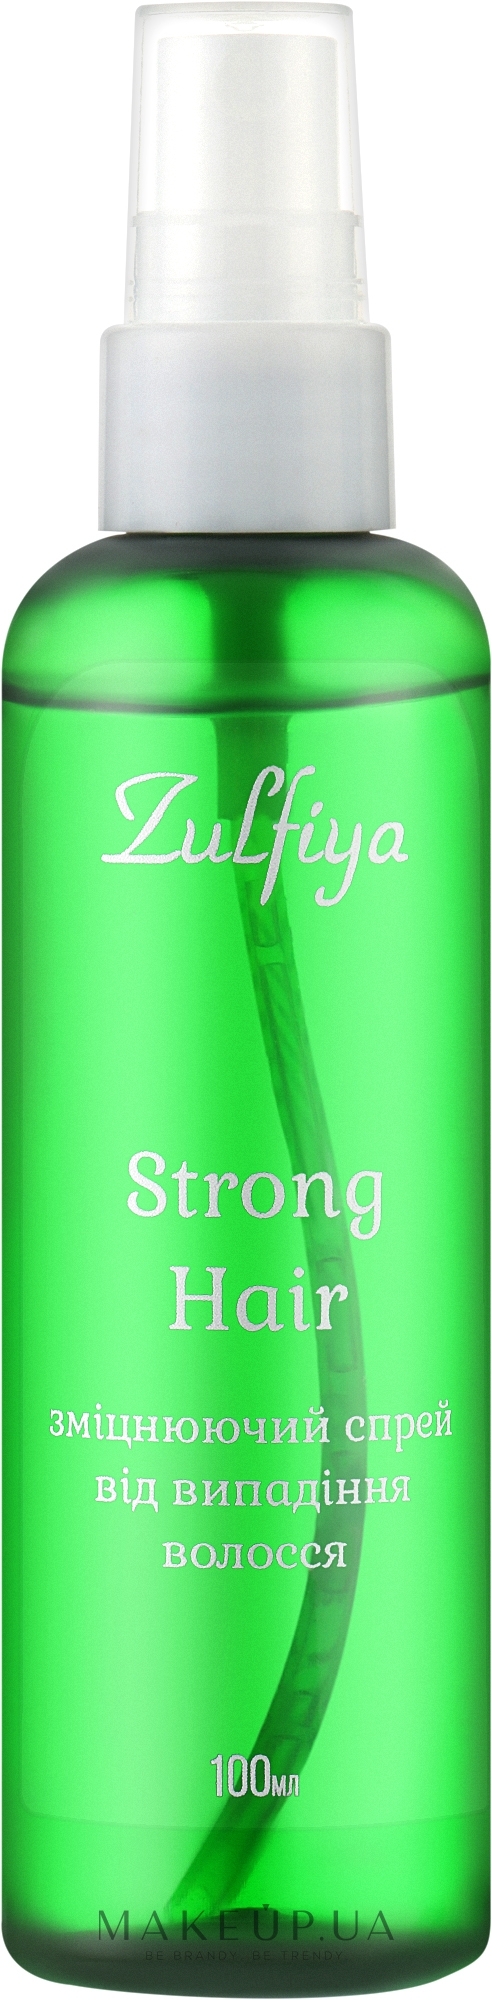 Укрепляющий спрей от выпадения волос - Zulfiya  — фото 100g